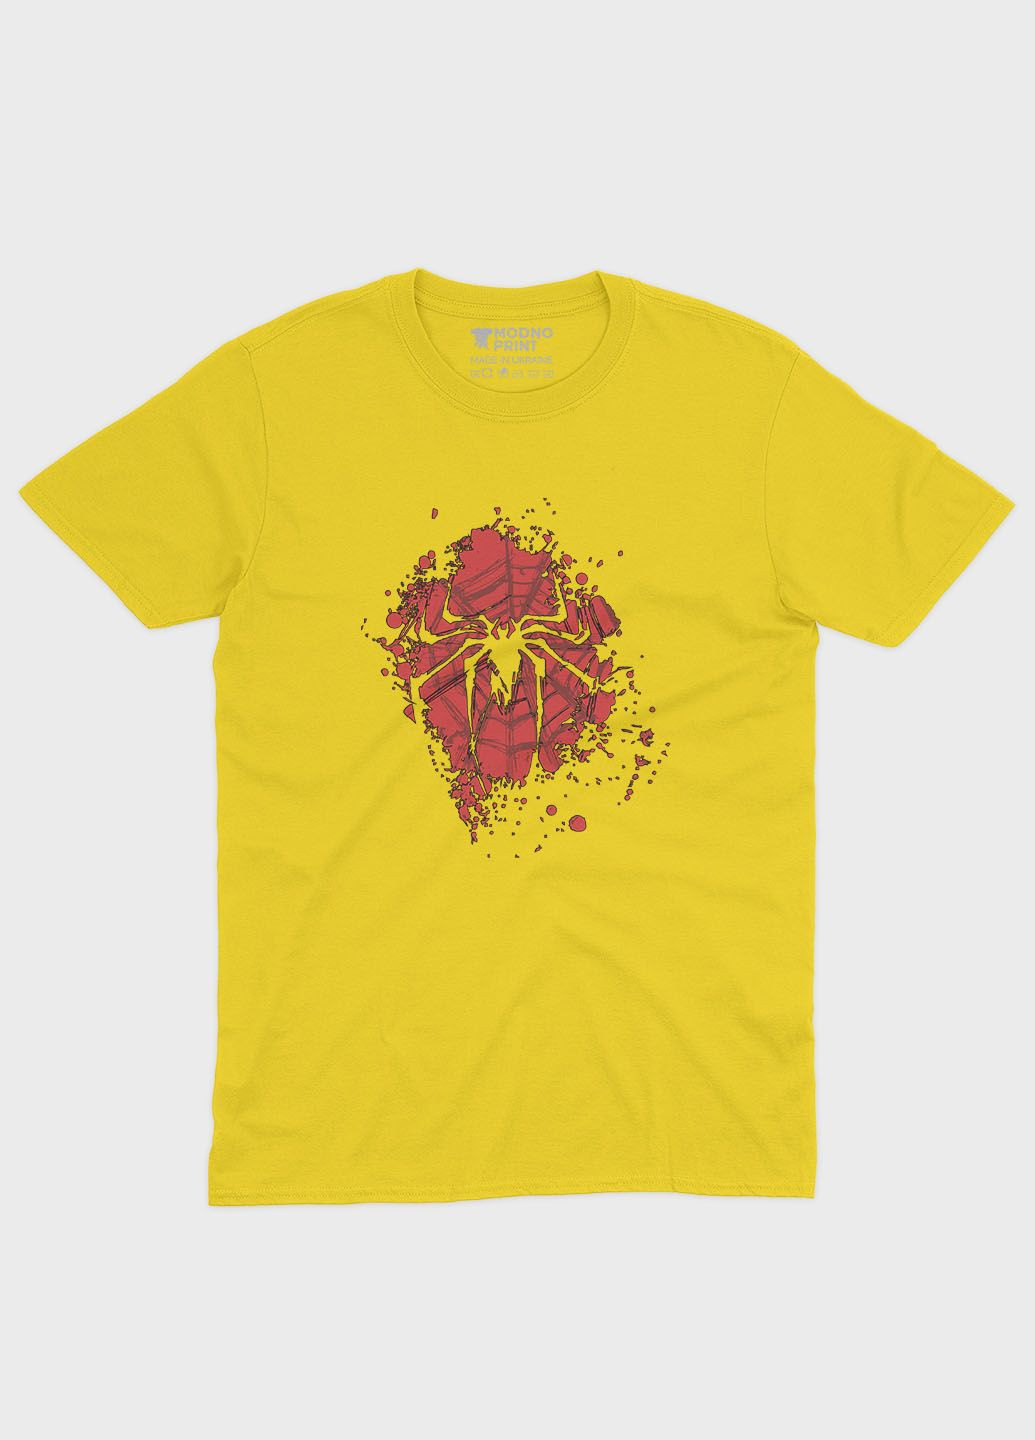 Жовта демісезонна футболка для хлопчика з принтом супергероя - людина-павук (ts001-1-sun-006-014-084-b) Modno